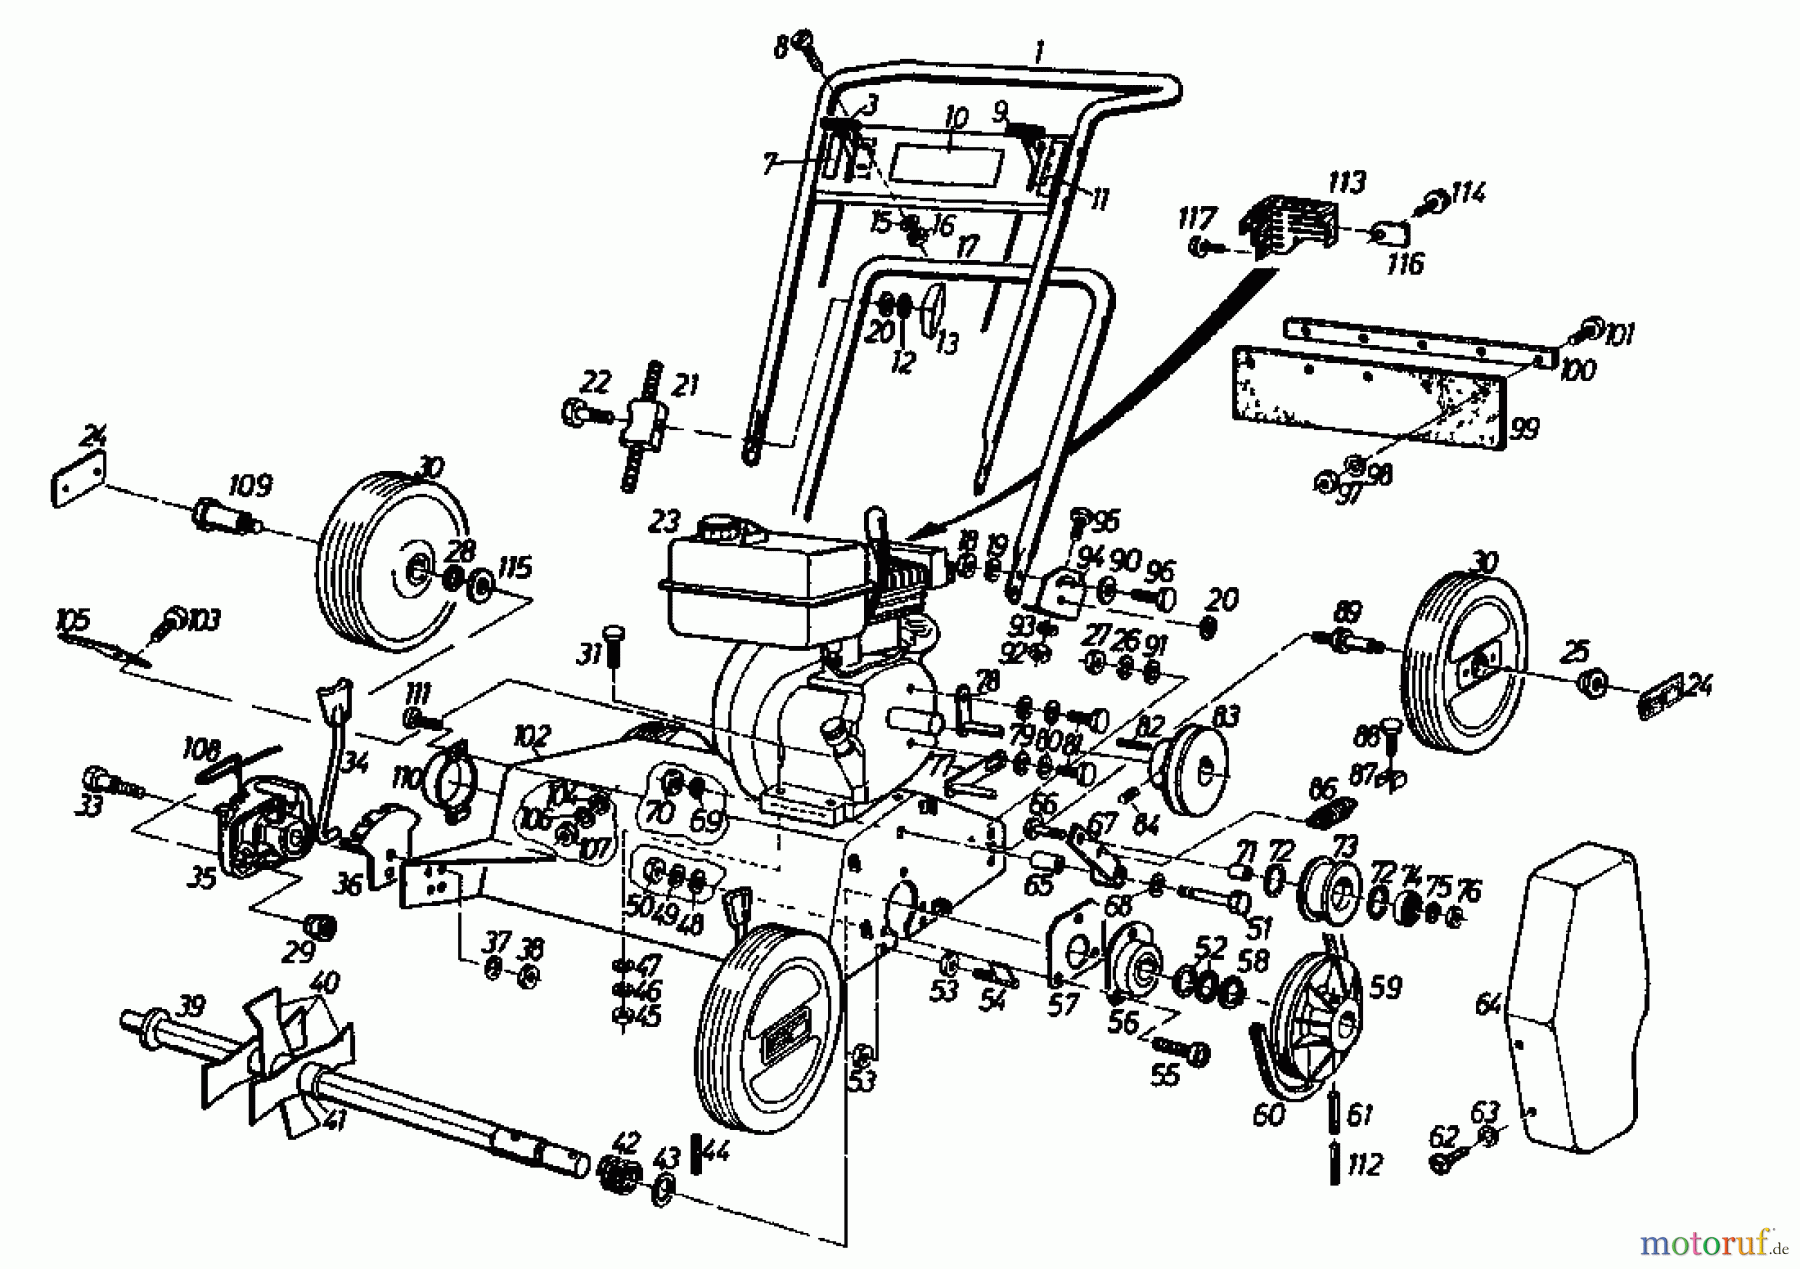  Gutbrod Scarificateur thermique VS 40 A 00054.04  (1987) Machine de base